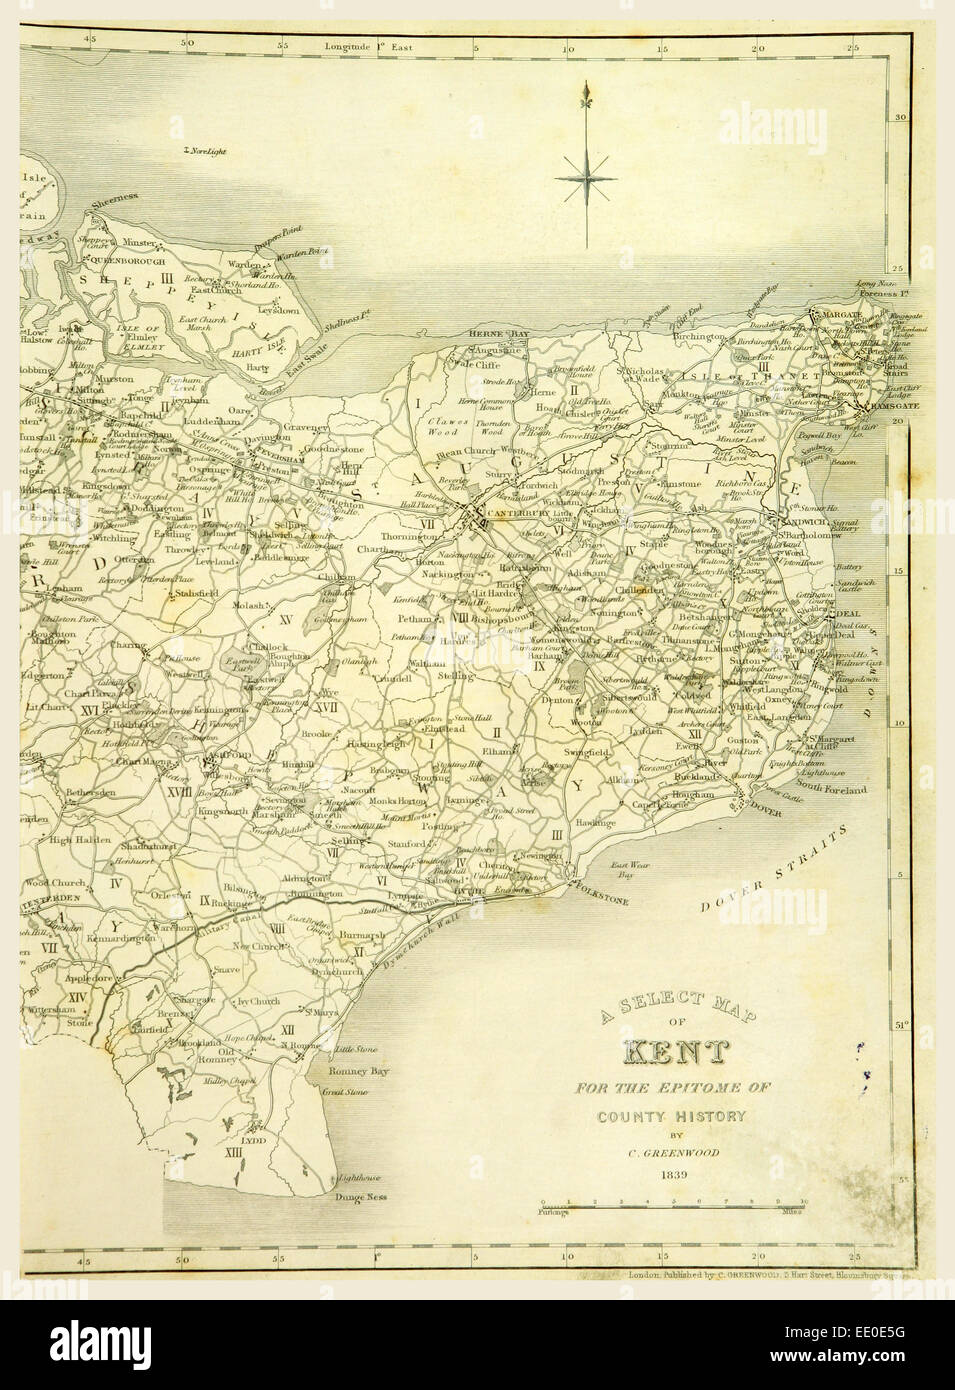 La carte, comté de Kent, 1839, gravure du xixe siècle Banque D'Images